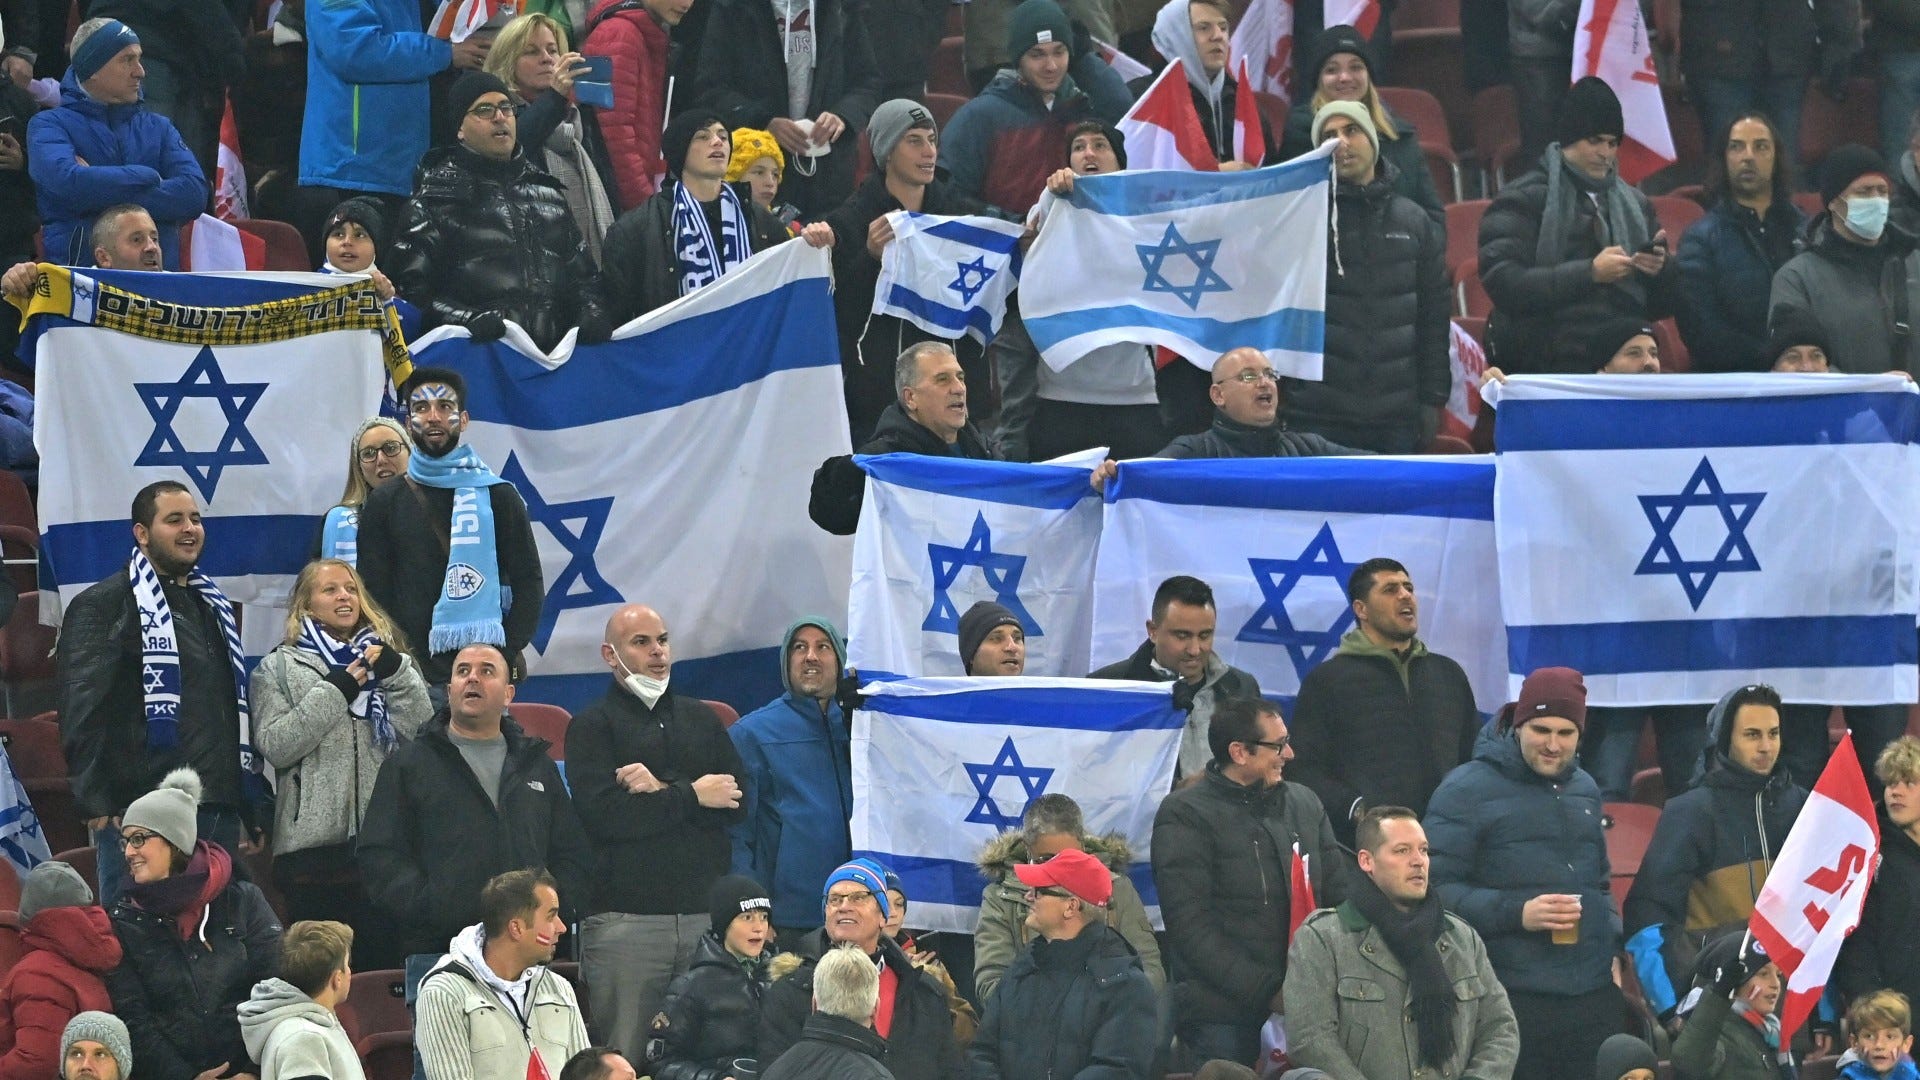 Israel fans